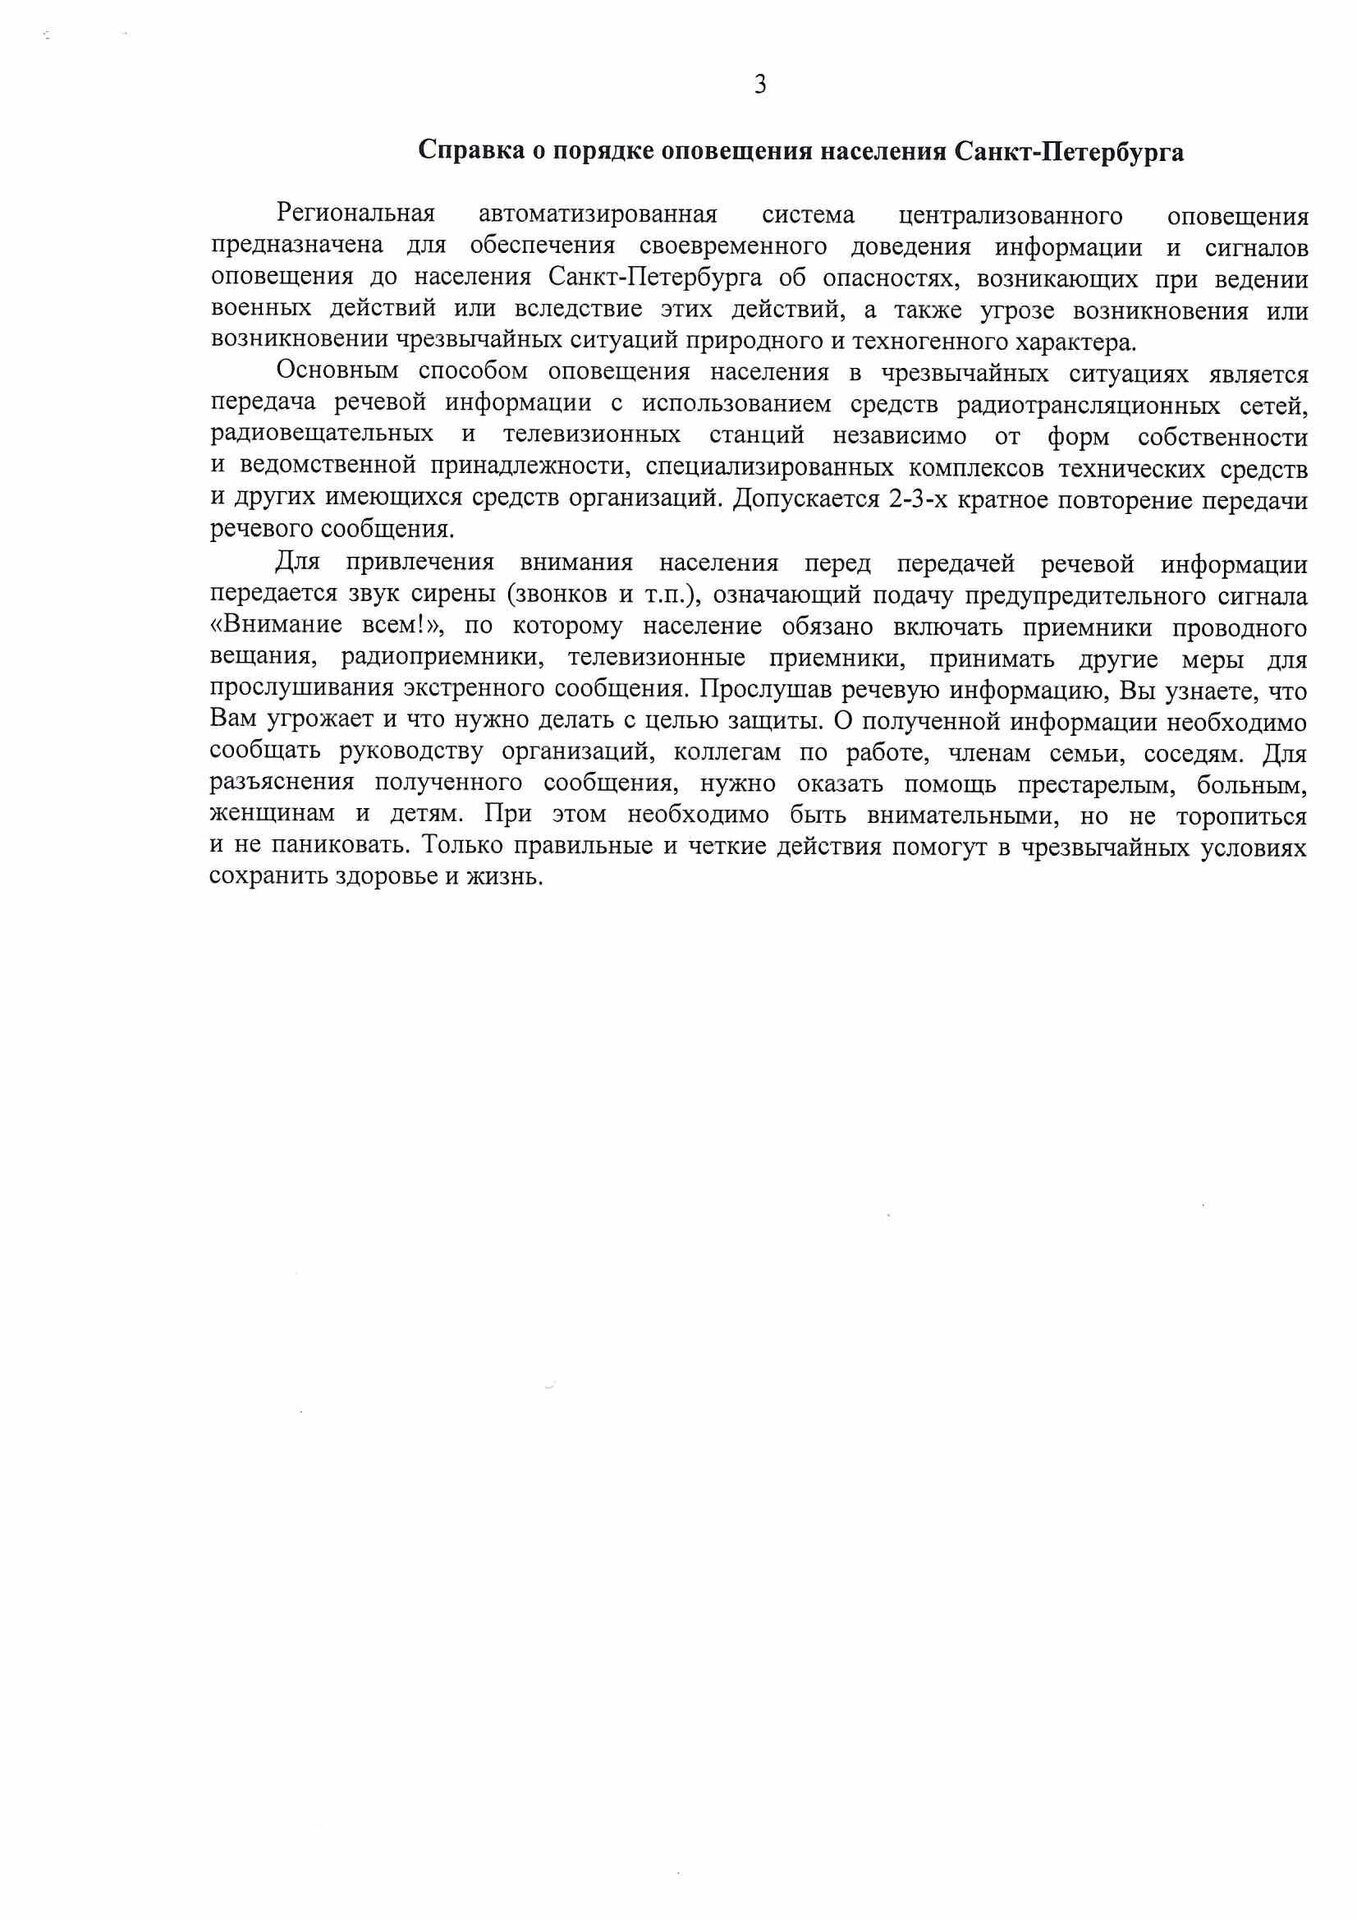 Информация о проведении комплексной проверки готовности РАСЦО СПб. лист 3